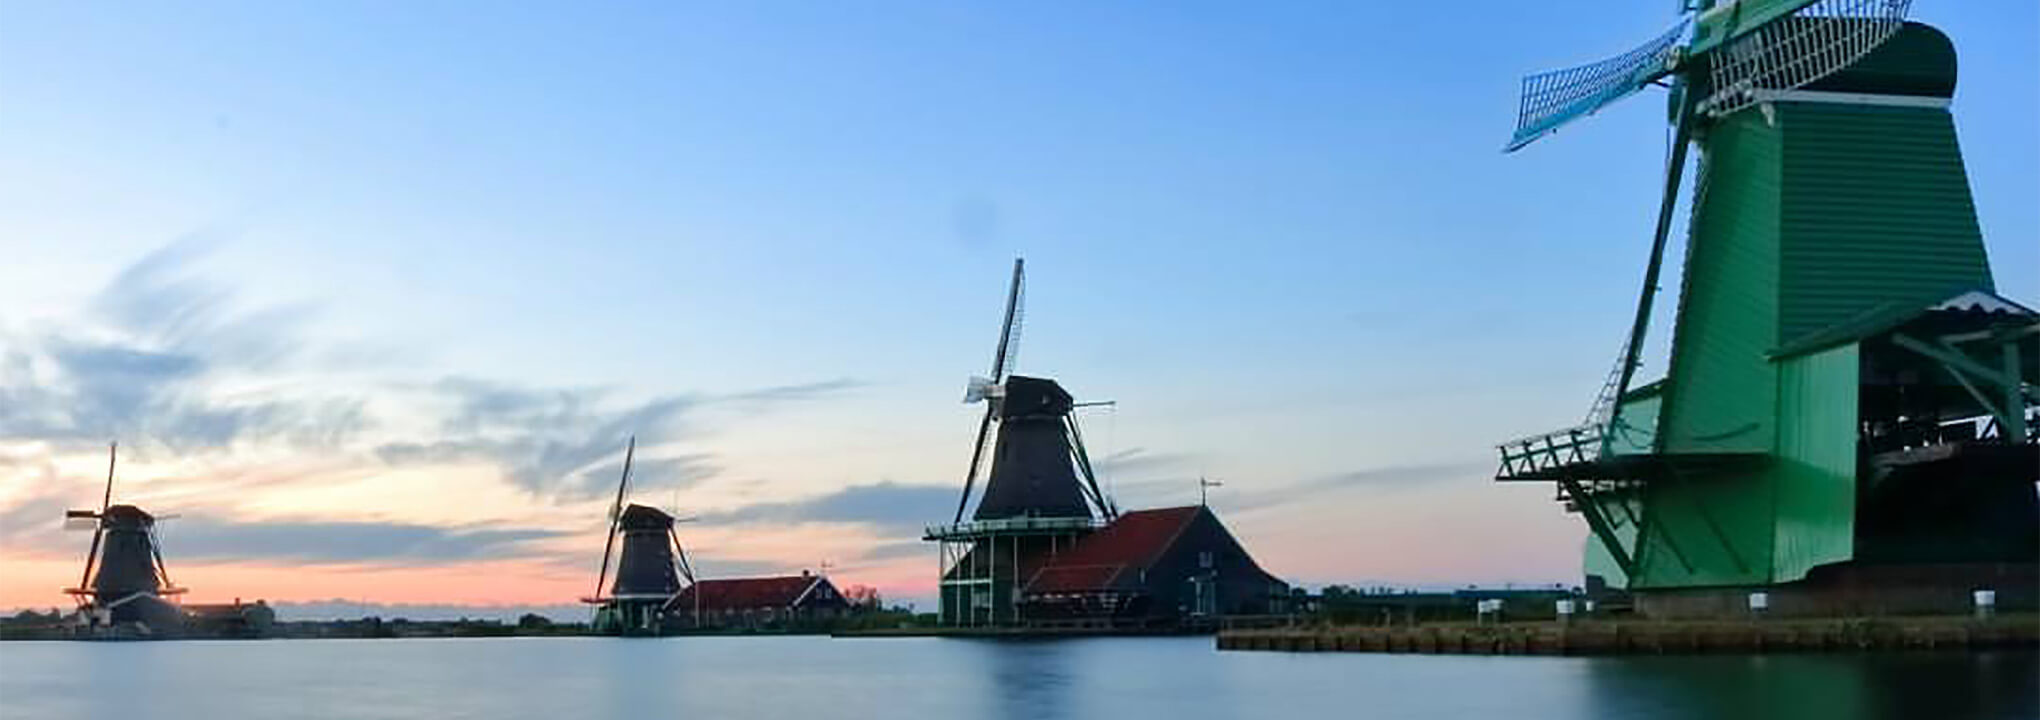 Zaanse Schans
visit of Windmills